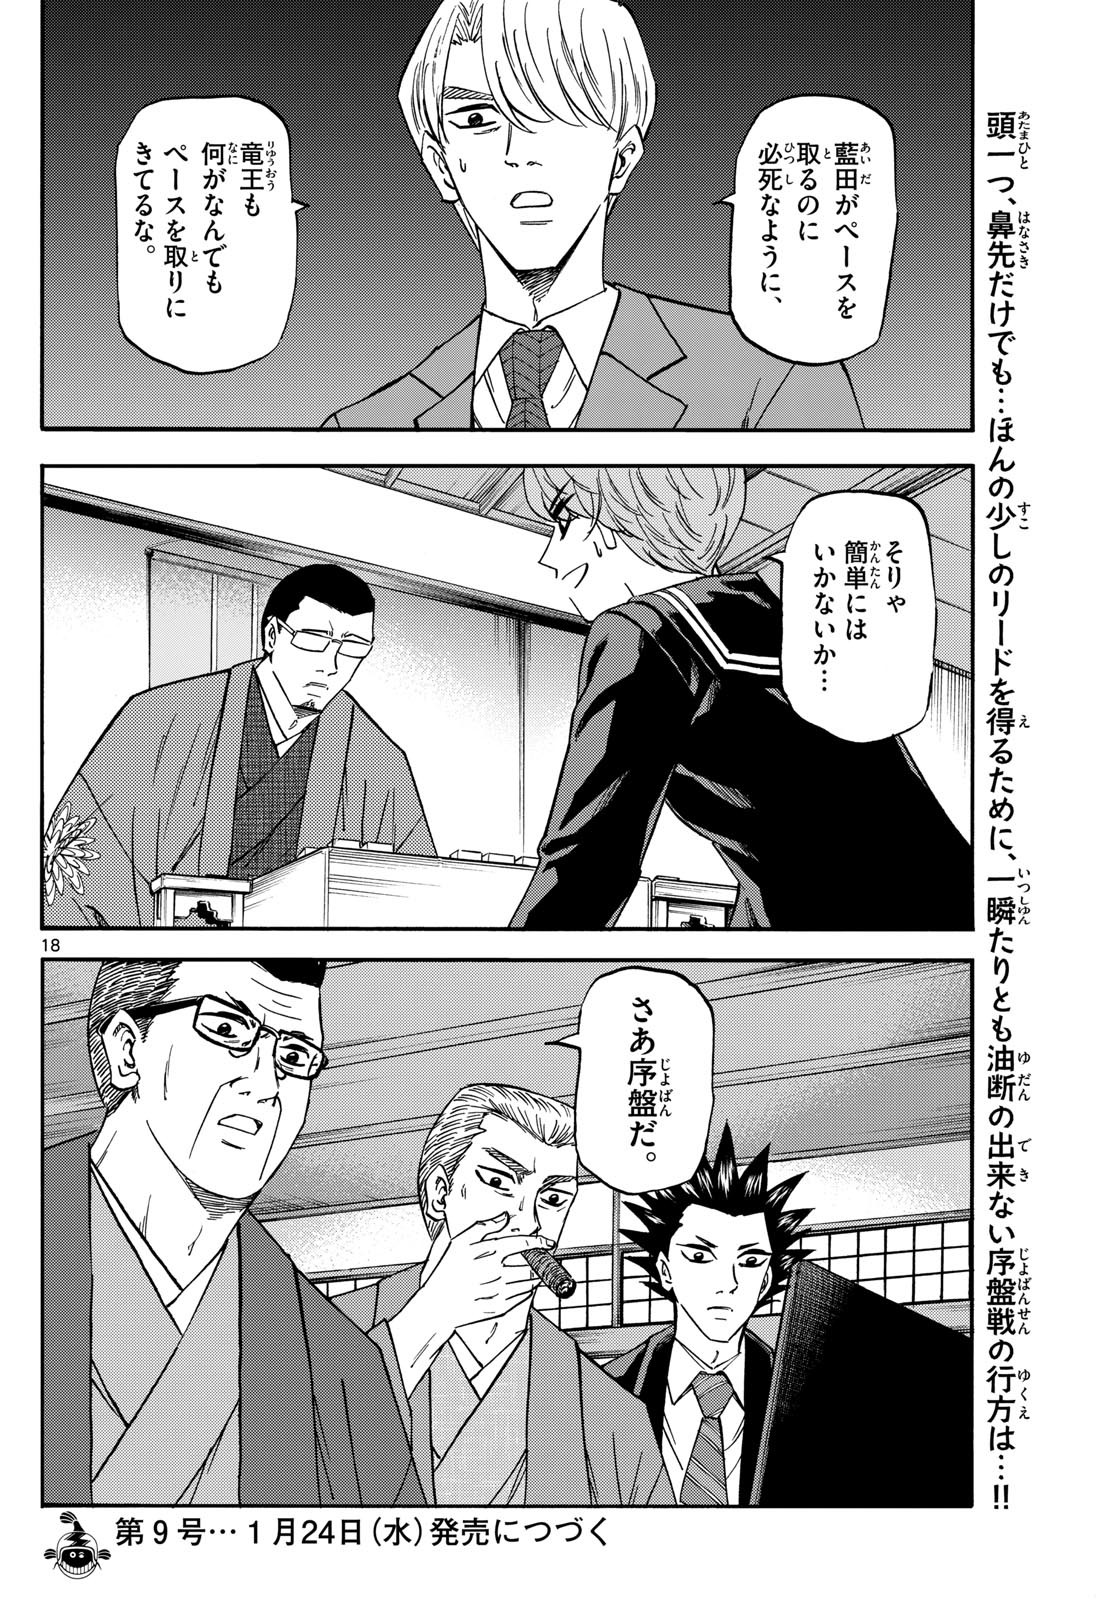 Ryu-to-Ichigo - Chapter 175 - Page 18